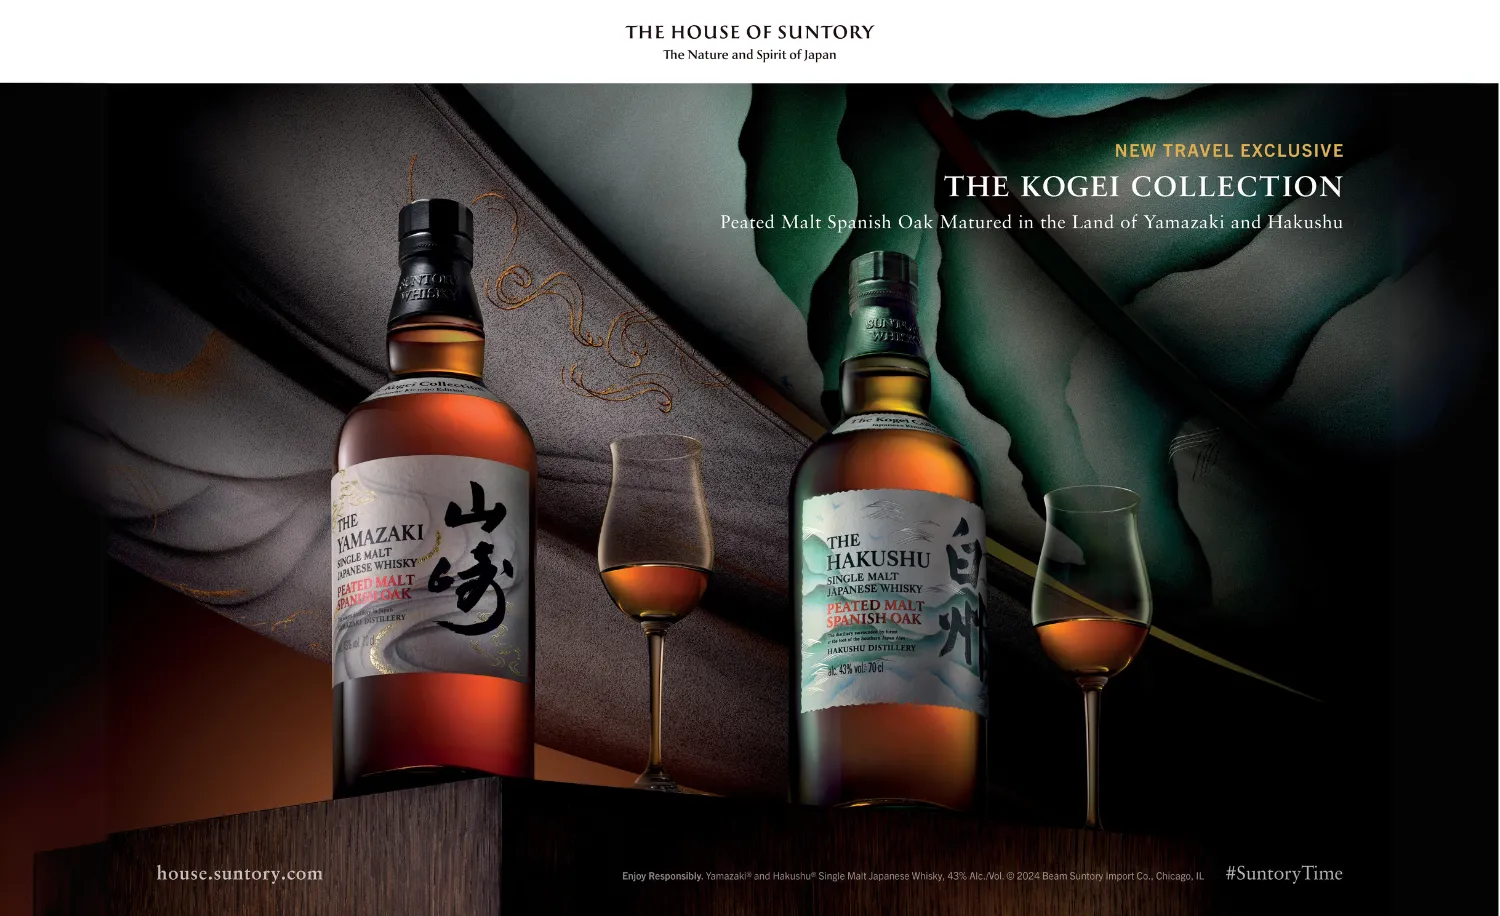 Whiskies embodying traditional Japanese craftsmanship